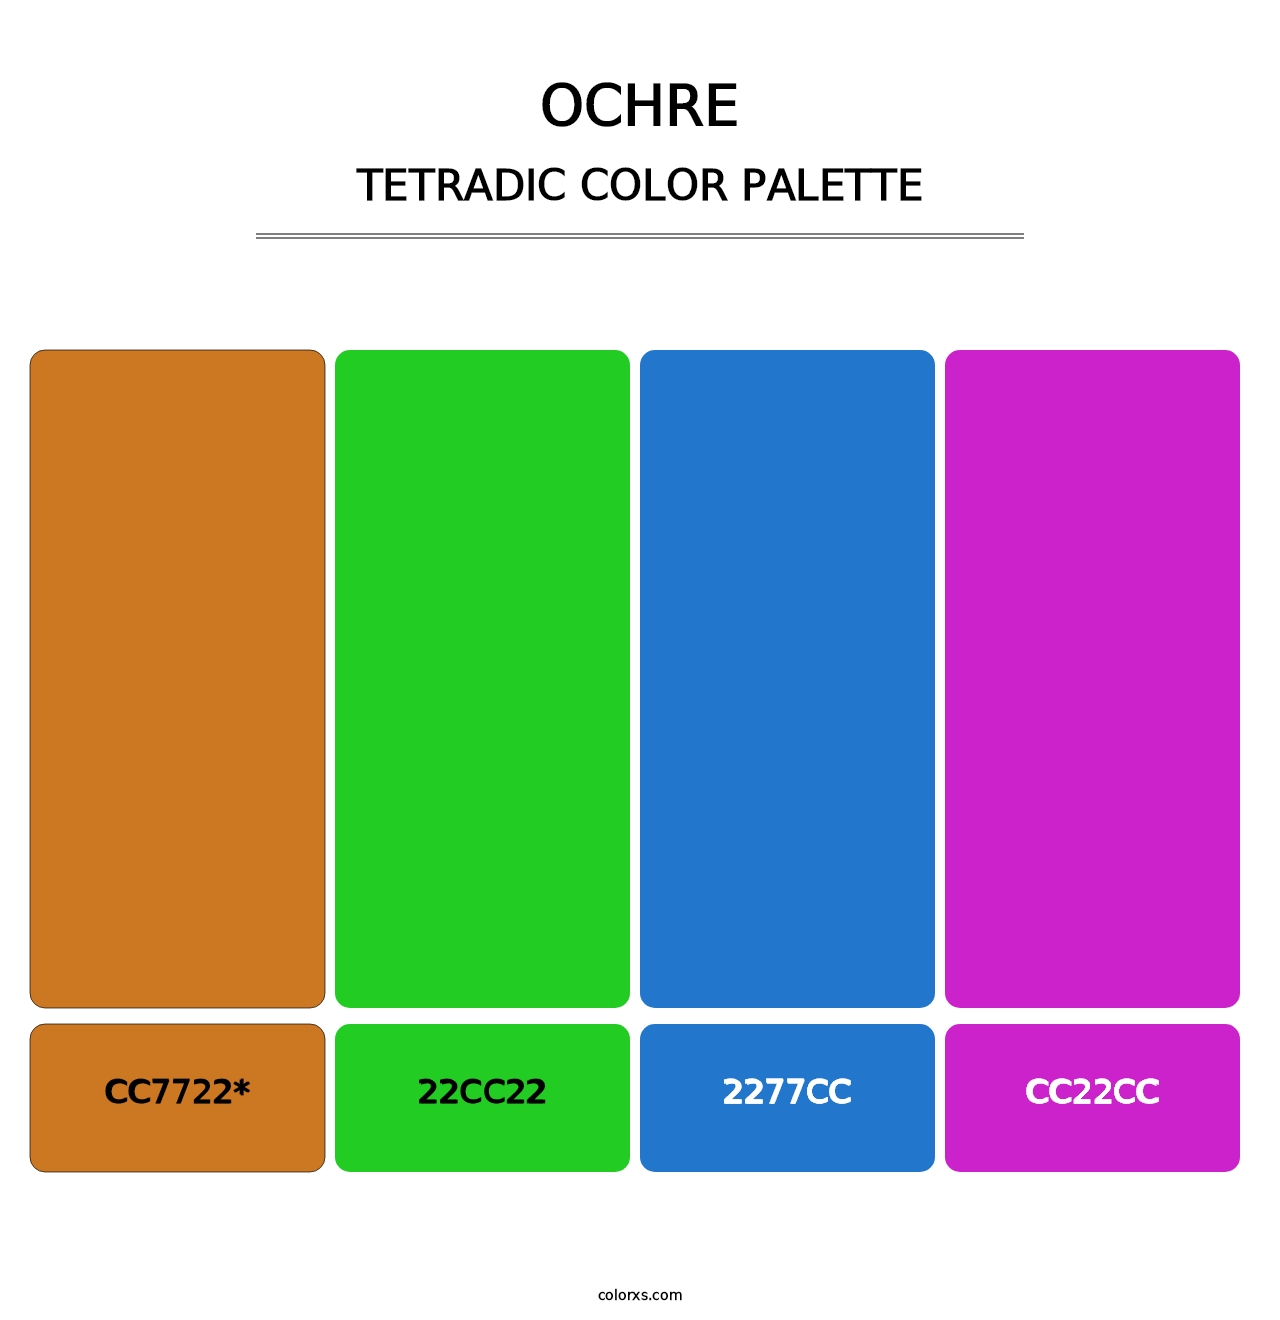 Ochre - Tetradic Color Palette